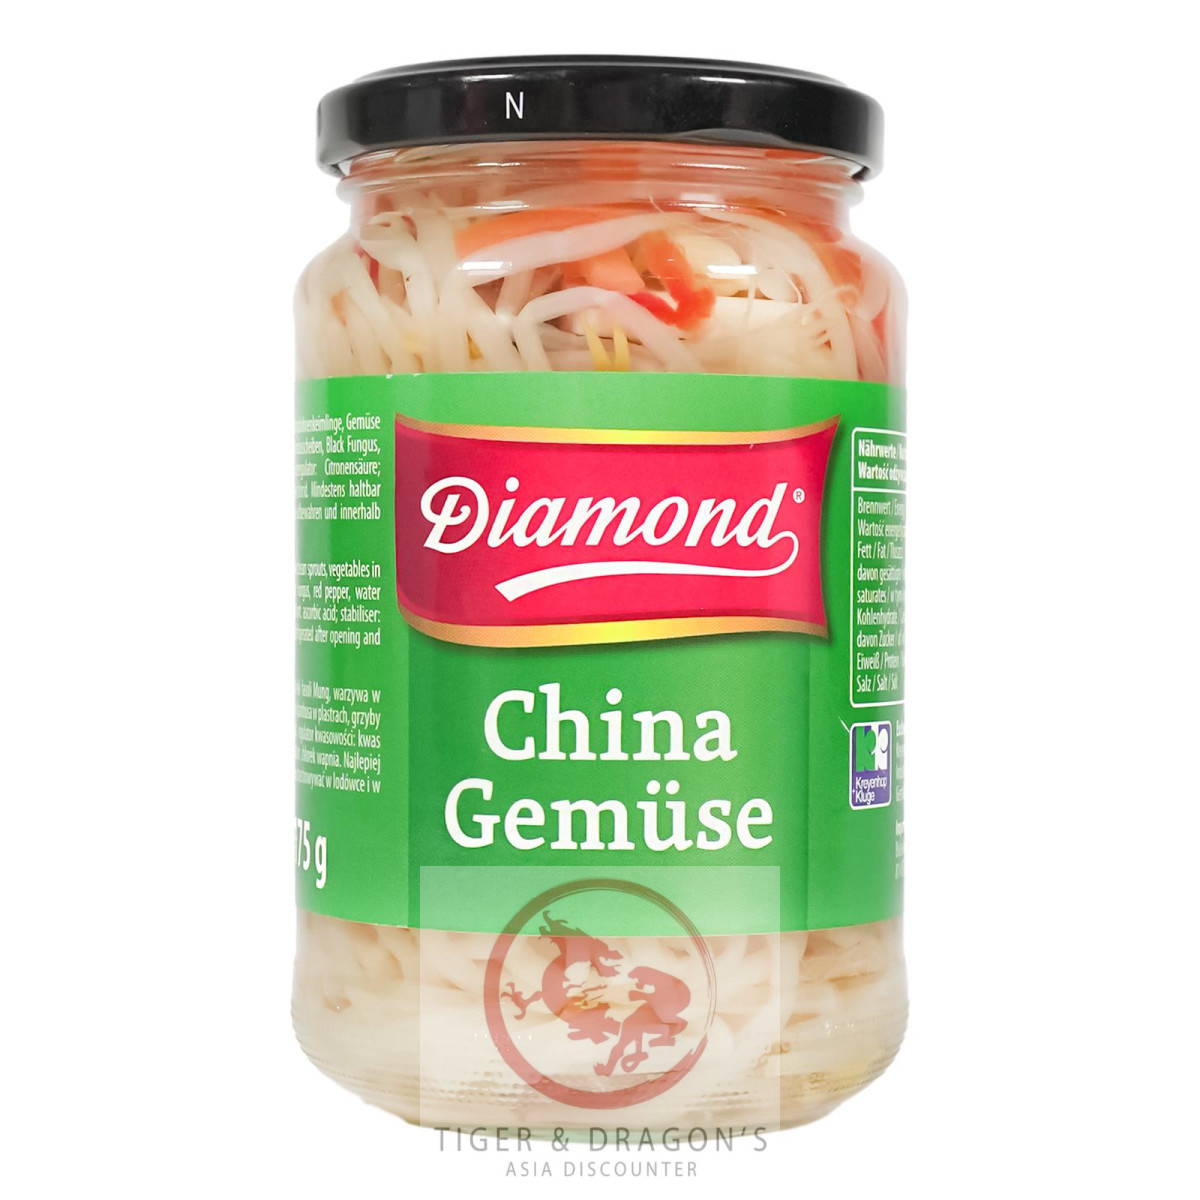 Diamond China Gemüse 330g/ATG175g